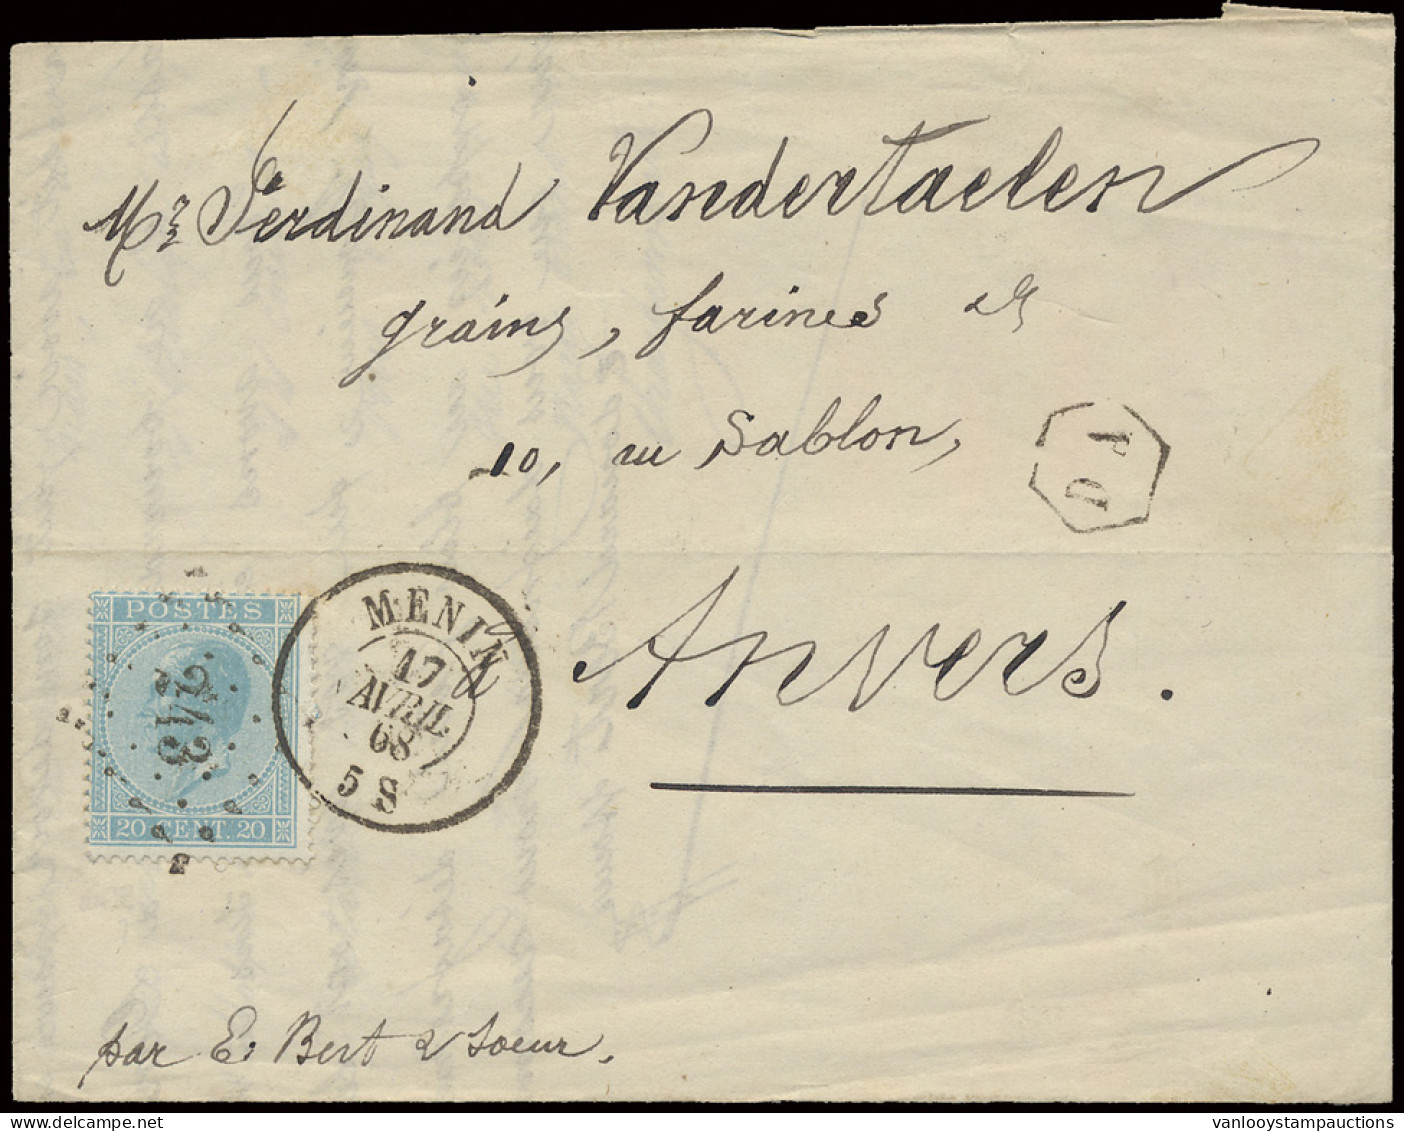 N° 18 Op Brief Met Postbusstempel PA In Hexagonaal, Menin 17 Avril 68 Naar Anvers, Zm - 1865-1866 Profil Gauche